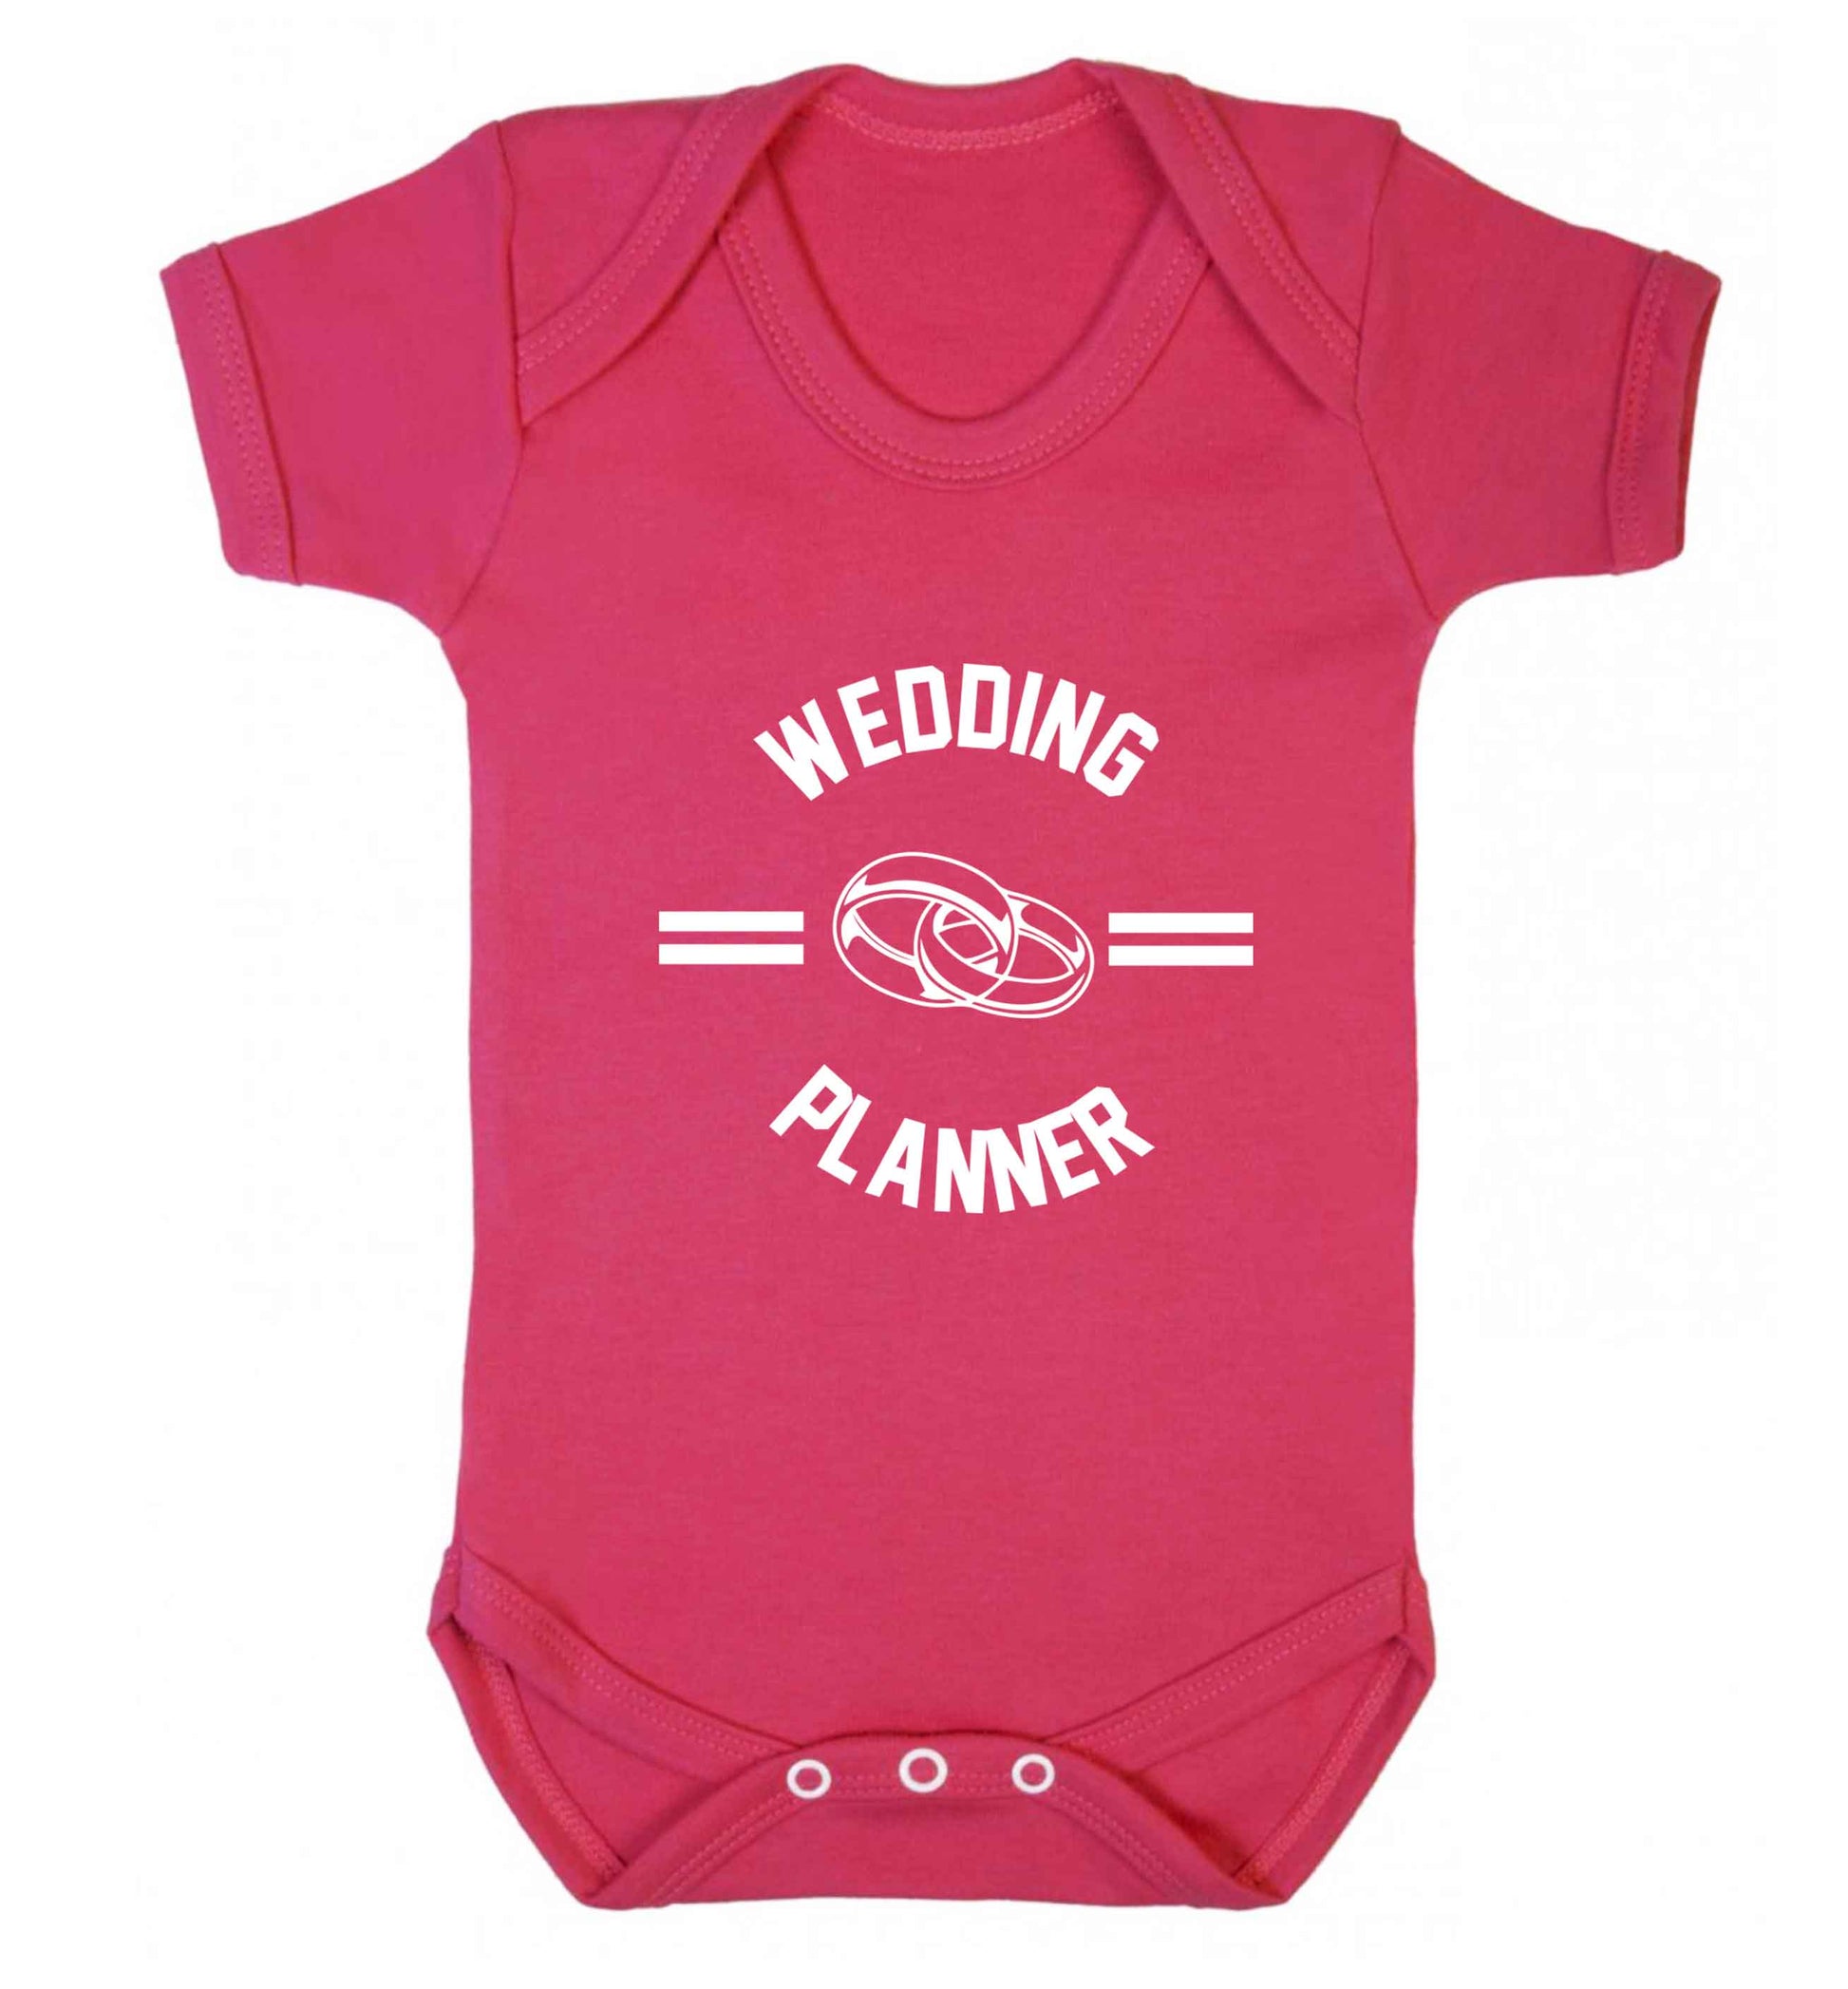 Wedding planner baby vest dark pink 18-24 months